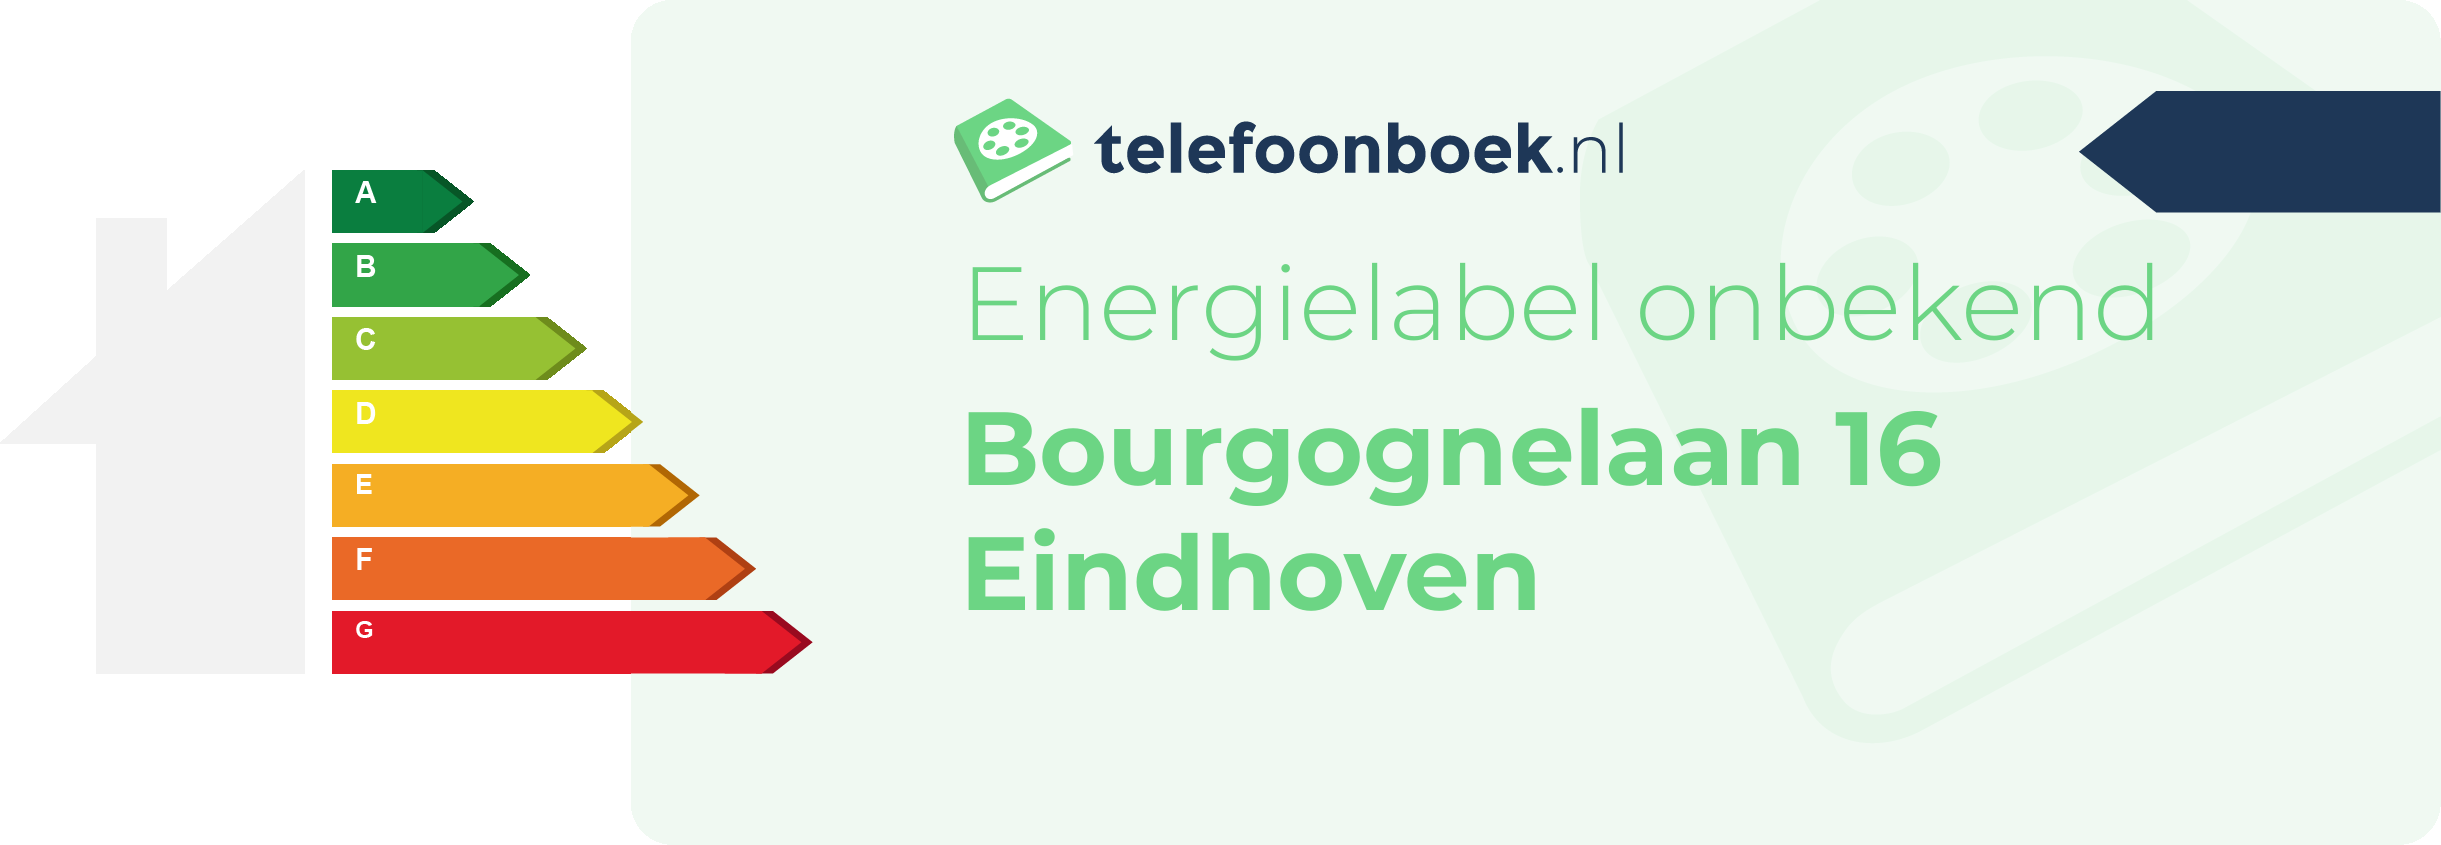 Energielabel Bourgognelaan 16 Eindhoven